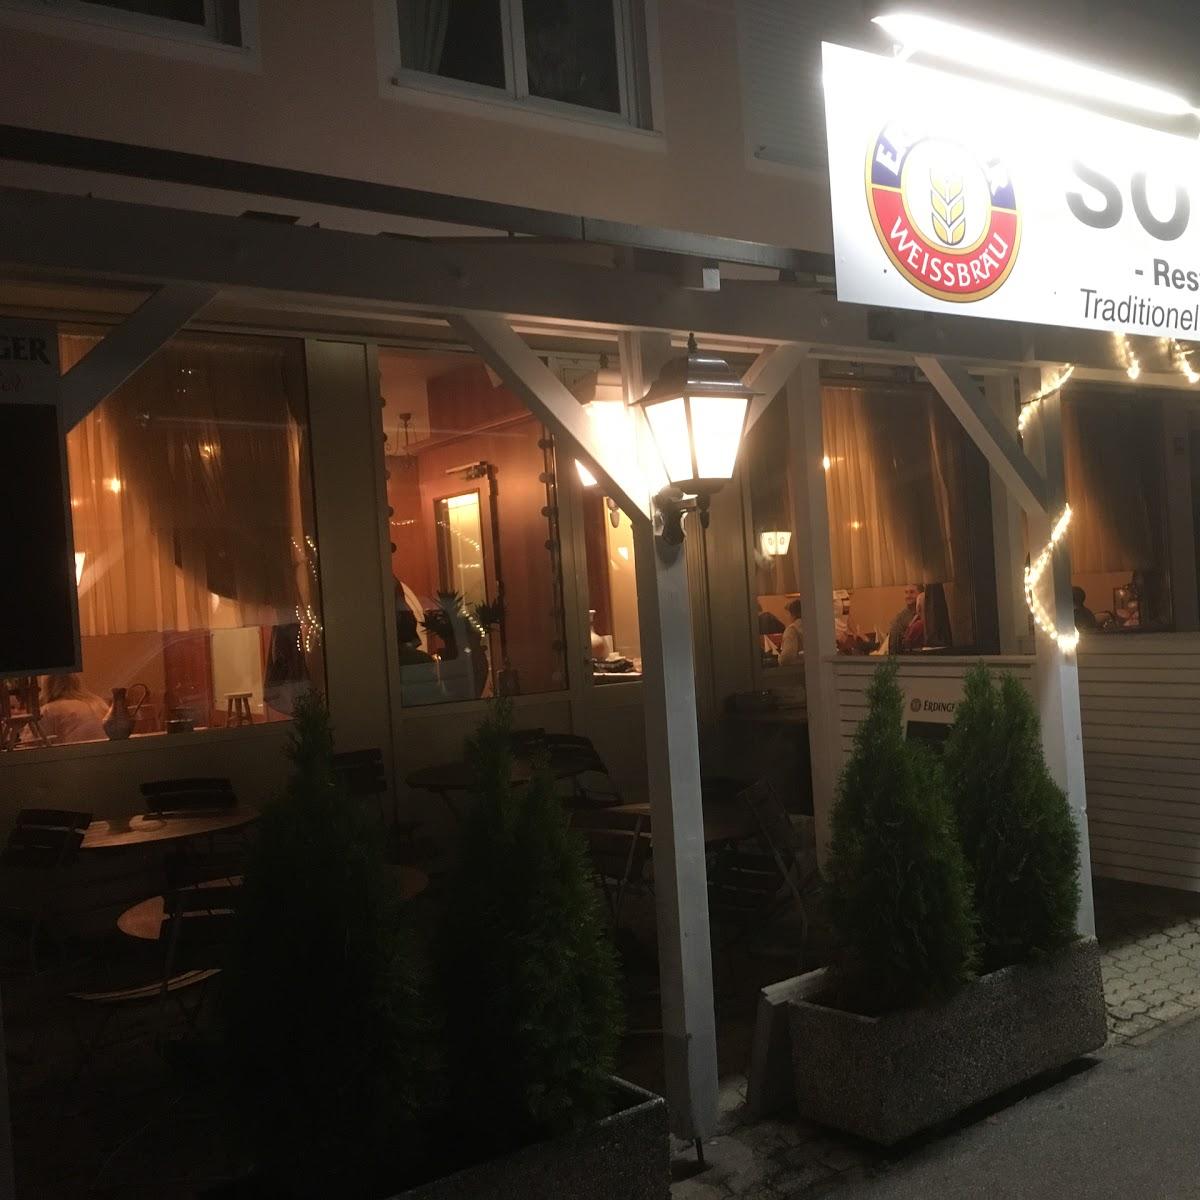 Restaurant "Restaurant Sofra" in  Erding